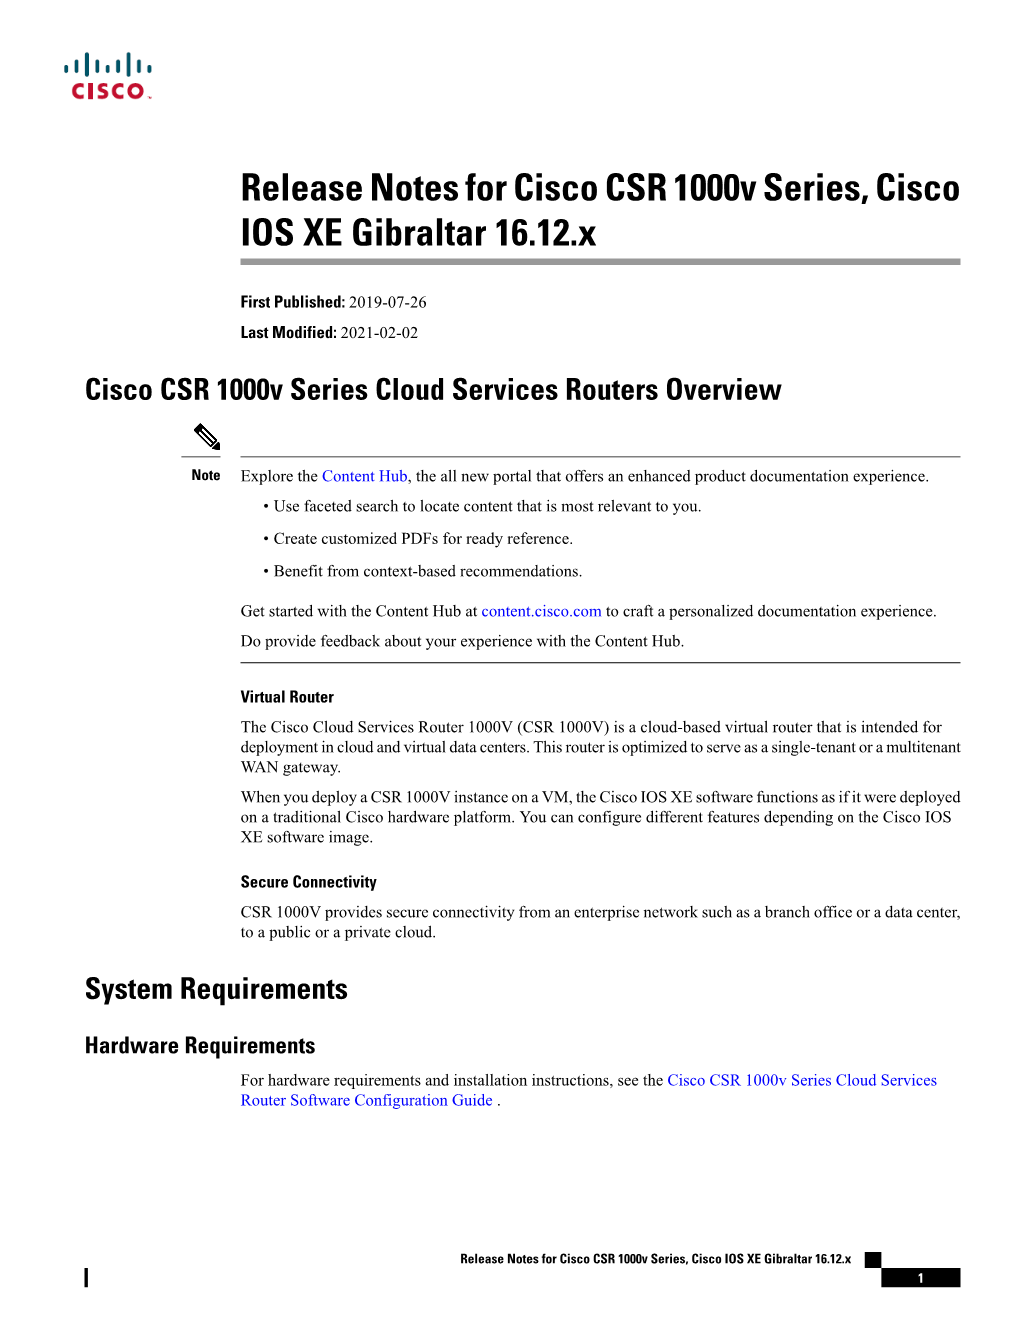 Release Notes for Cisco CSR 1000V Series, Cisco IOS XE Gibraltar 16.12.X